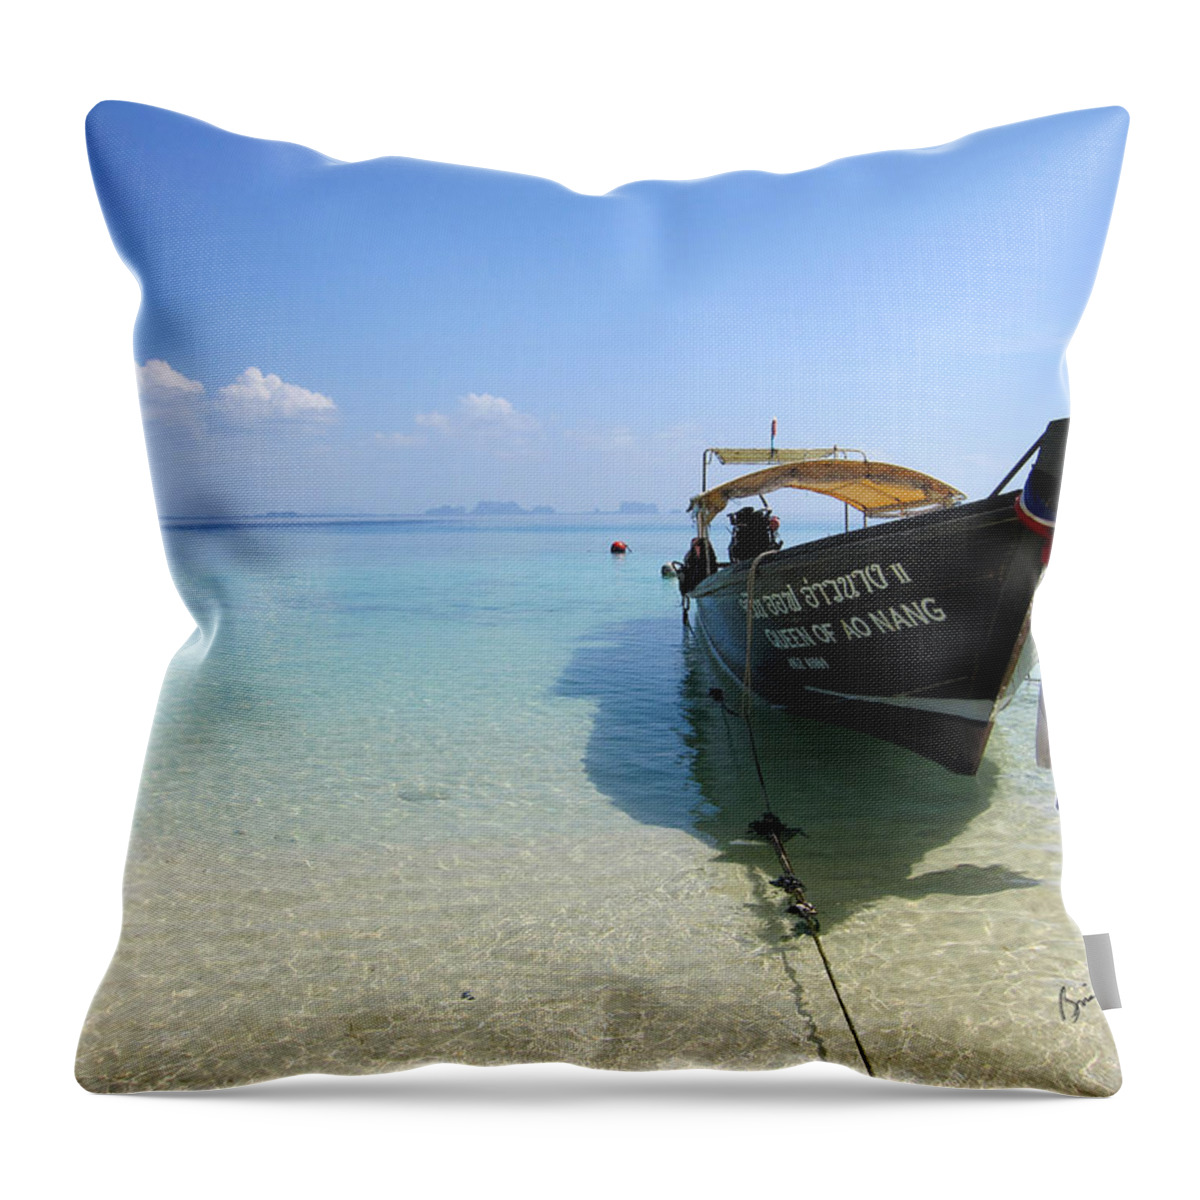 Seascape Throw Pillow featuring the photograph Queen of Ao Nang by Brian Gilna